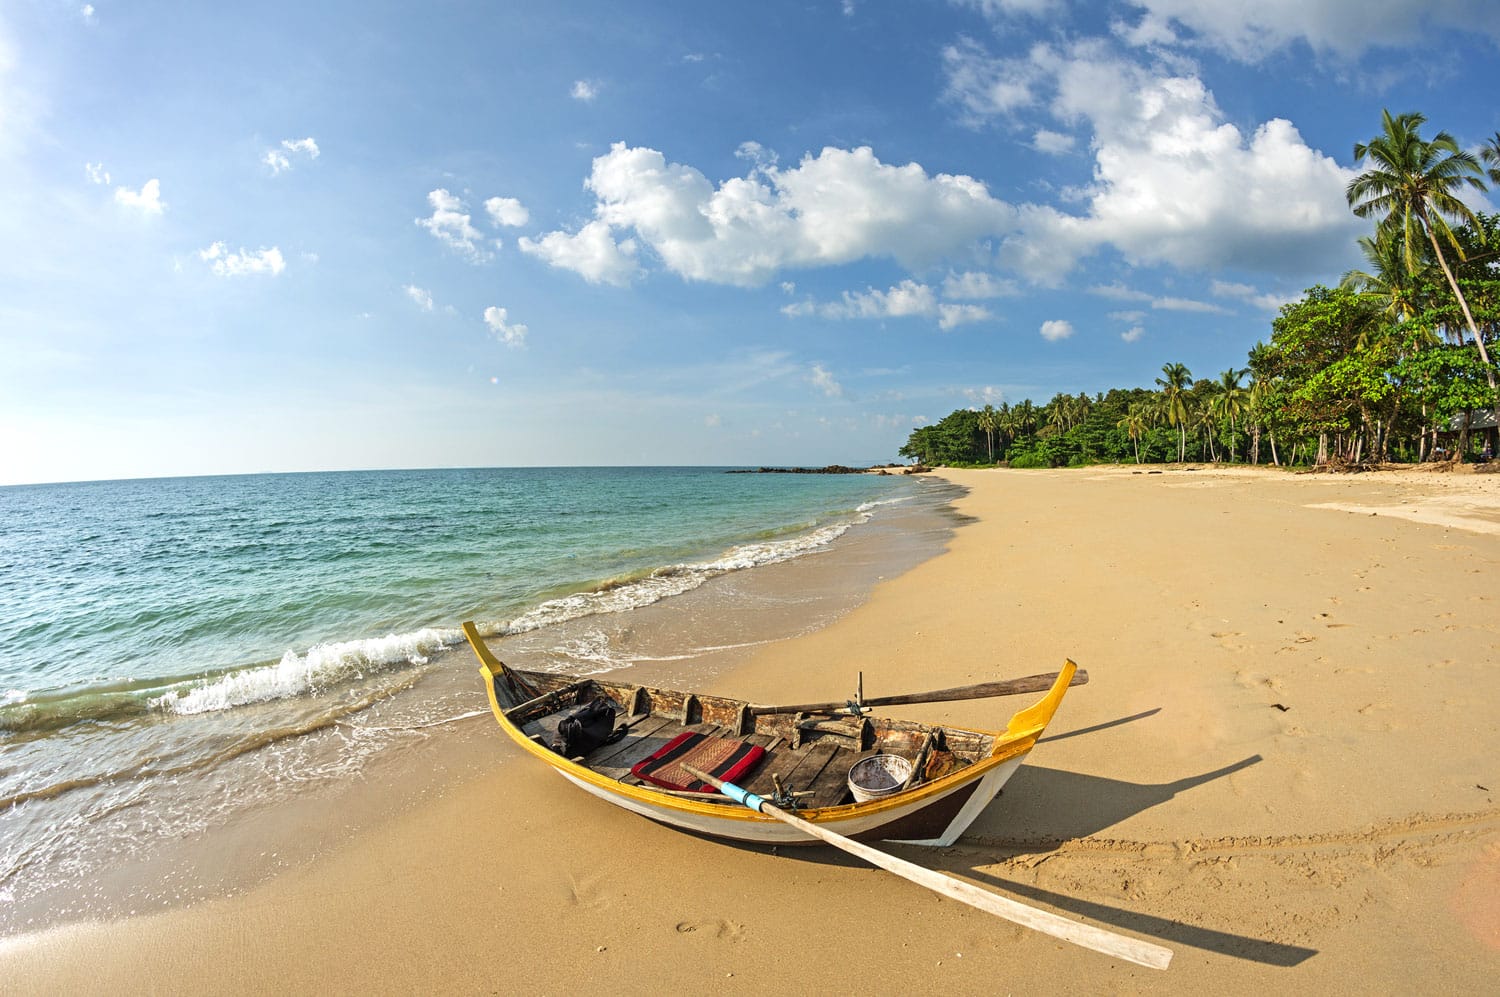 βάρκα με κωπηλασία σε μια τροπική παραλία στο Koh Lanta Ταϊλάνδη